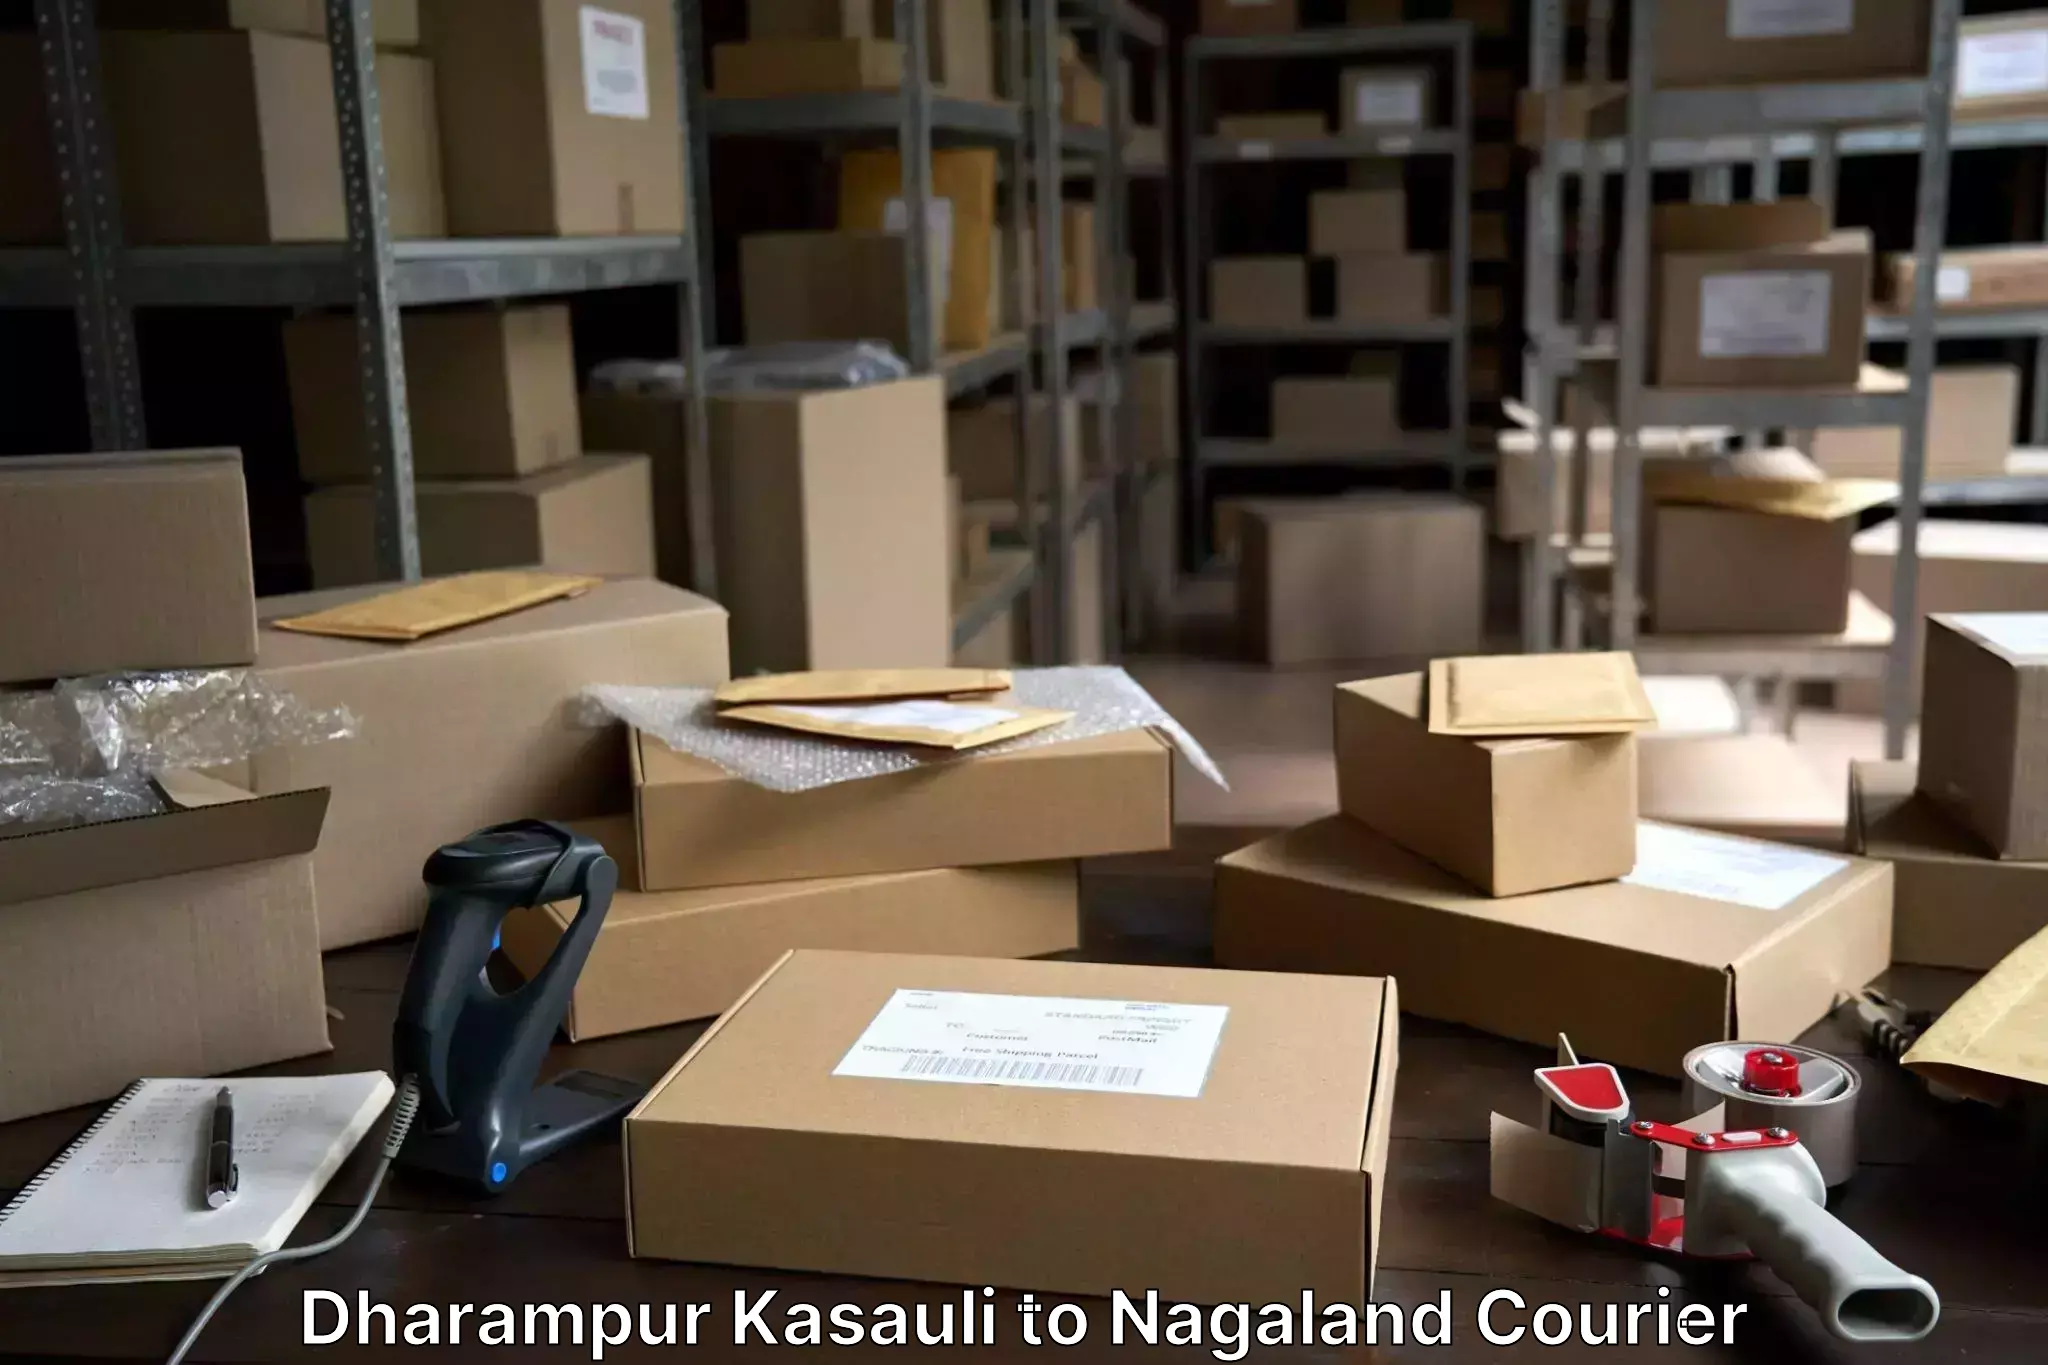 Baggage transport professionals Dharampur Kasauli to Longleng